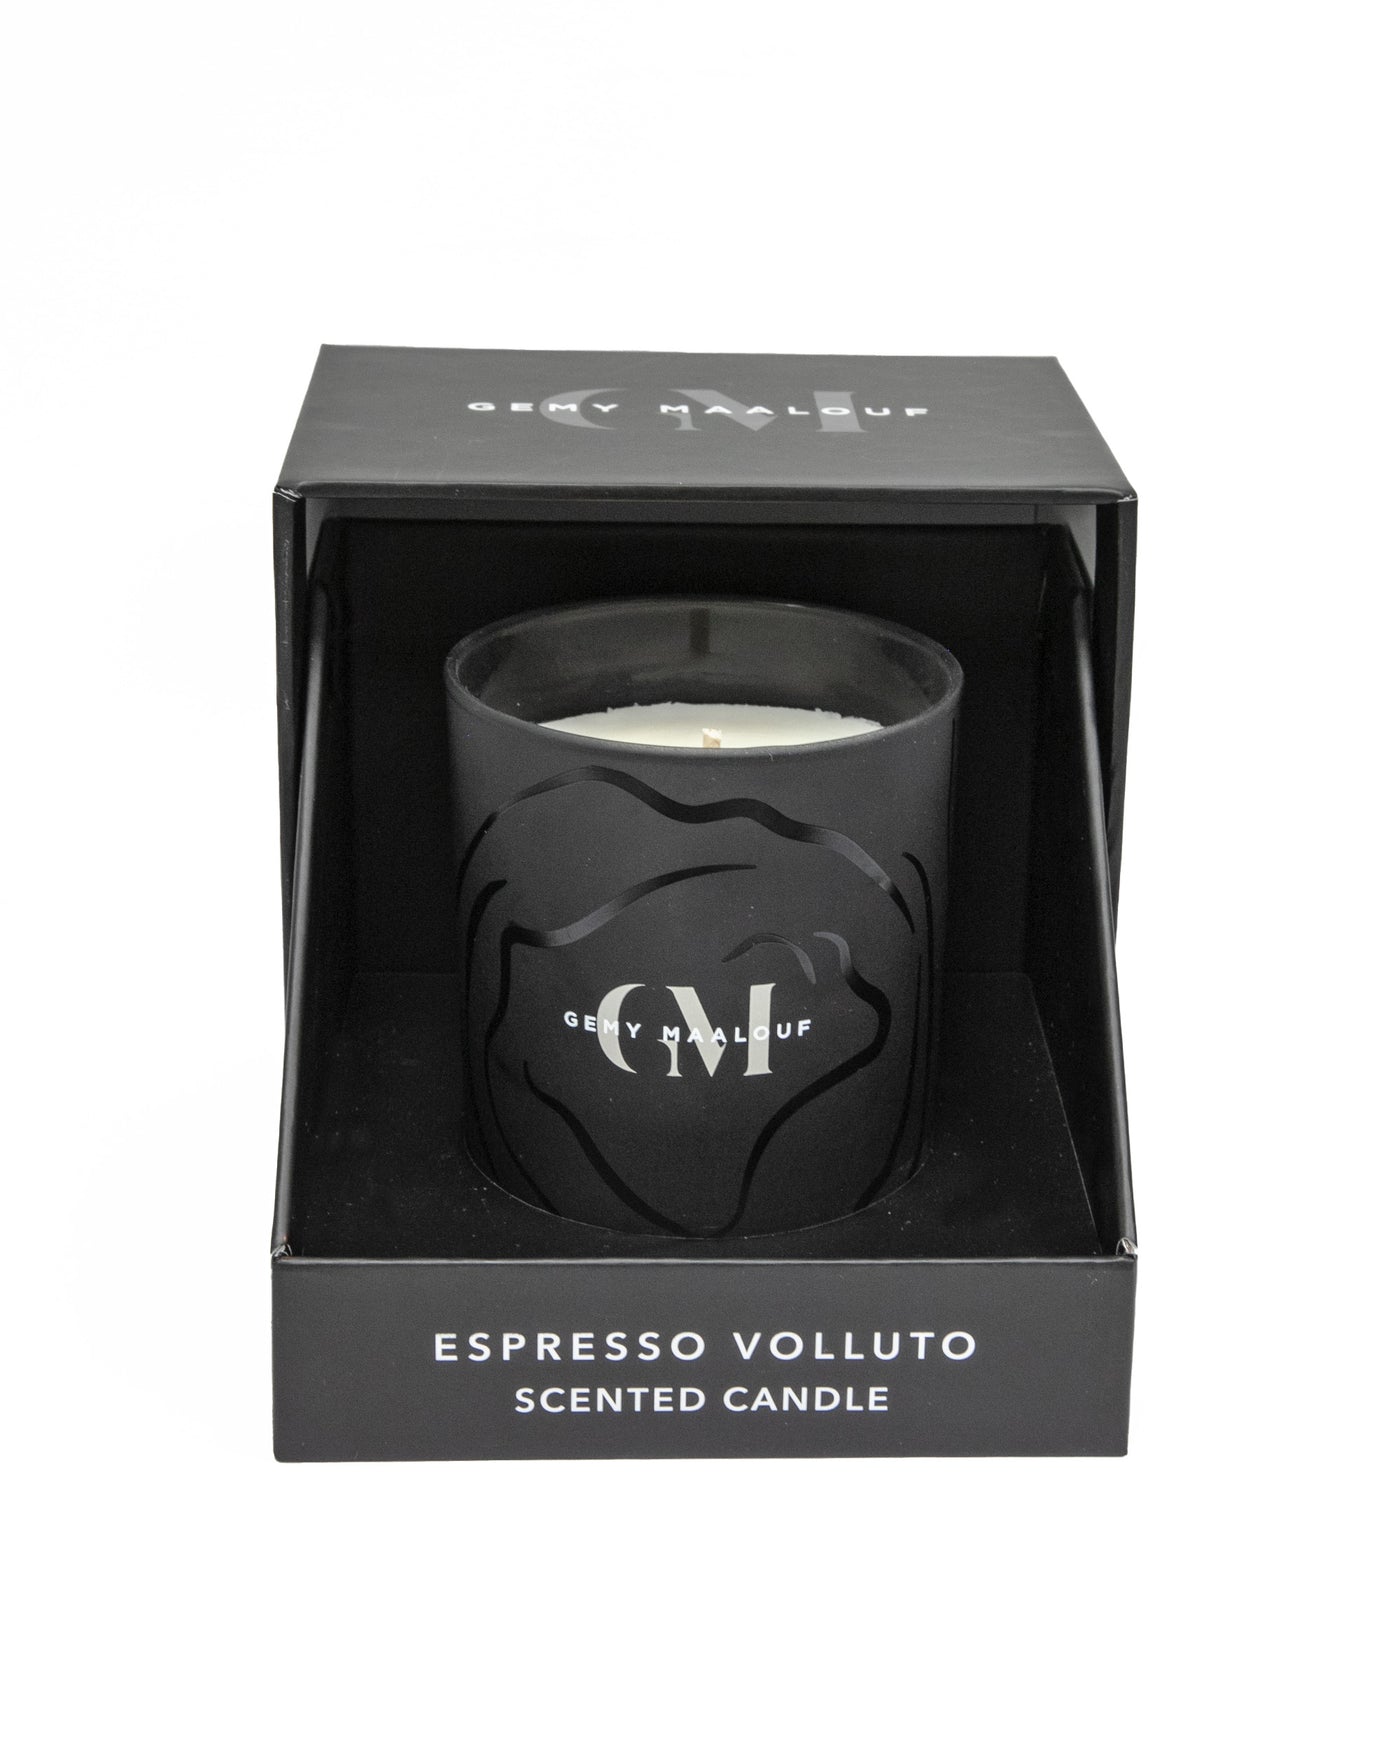 Espresso Volluto Scented Candle